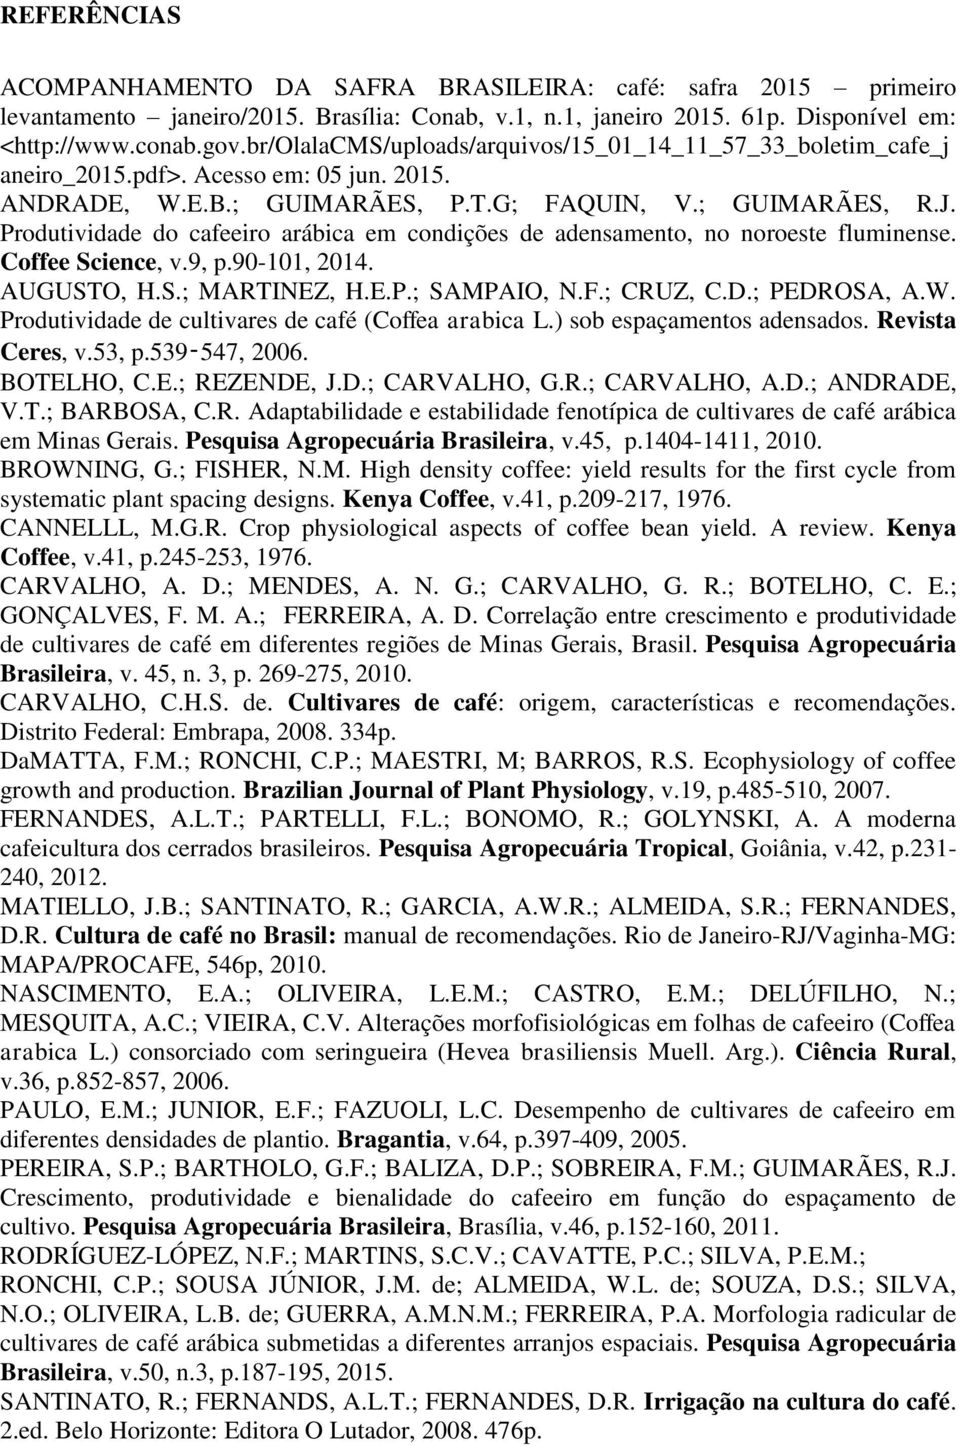 Produtividde do cfeeiro ráic em condições de densmento, no noroeste fluminense. Coffee Science, v.9, p.9-11, 14. AUGUSTO, H.S.; MARTINEZ, H.E.P.; SAMPAIO, N.F.; CRUZ, C.D.; PEDROSA, A.W.